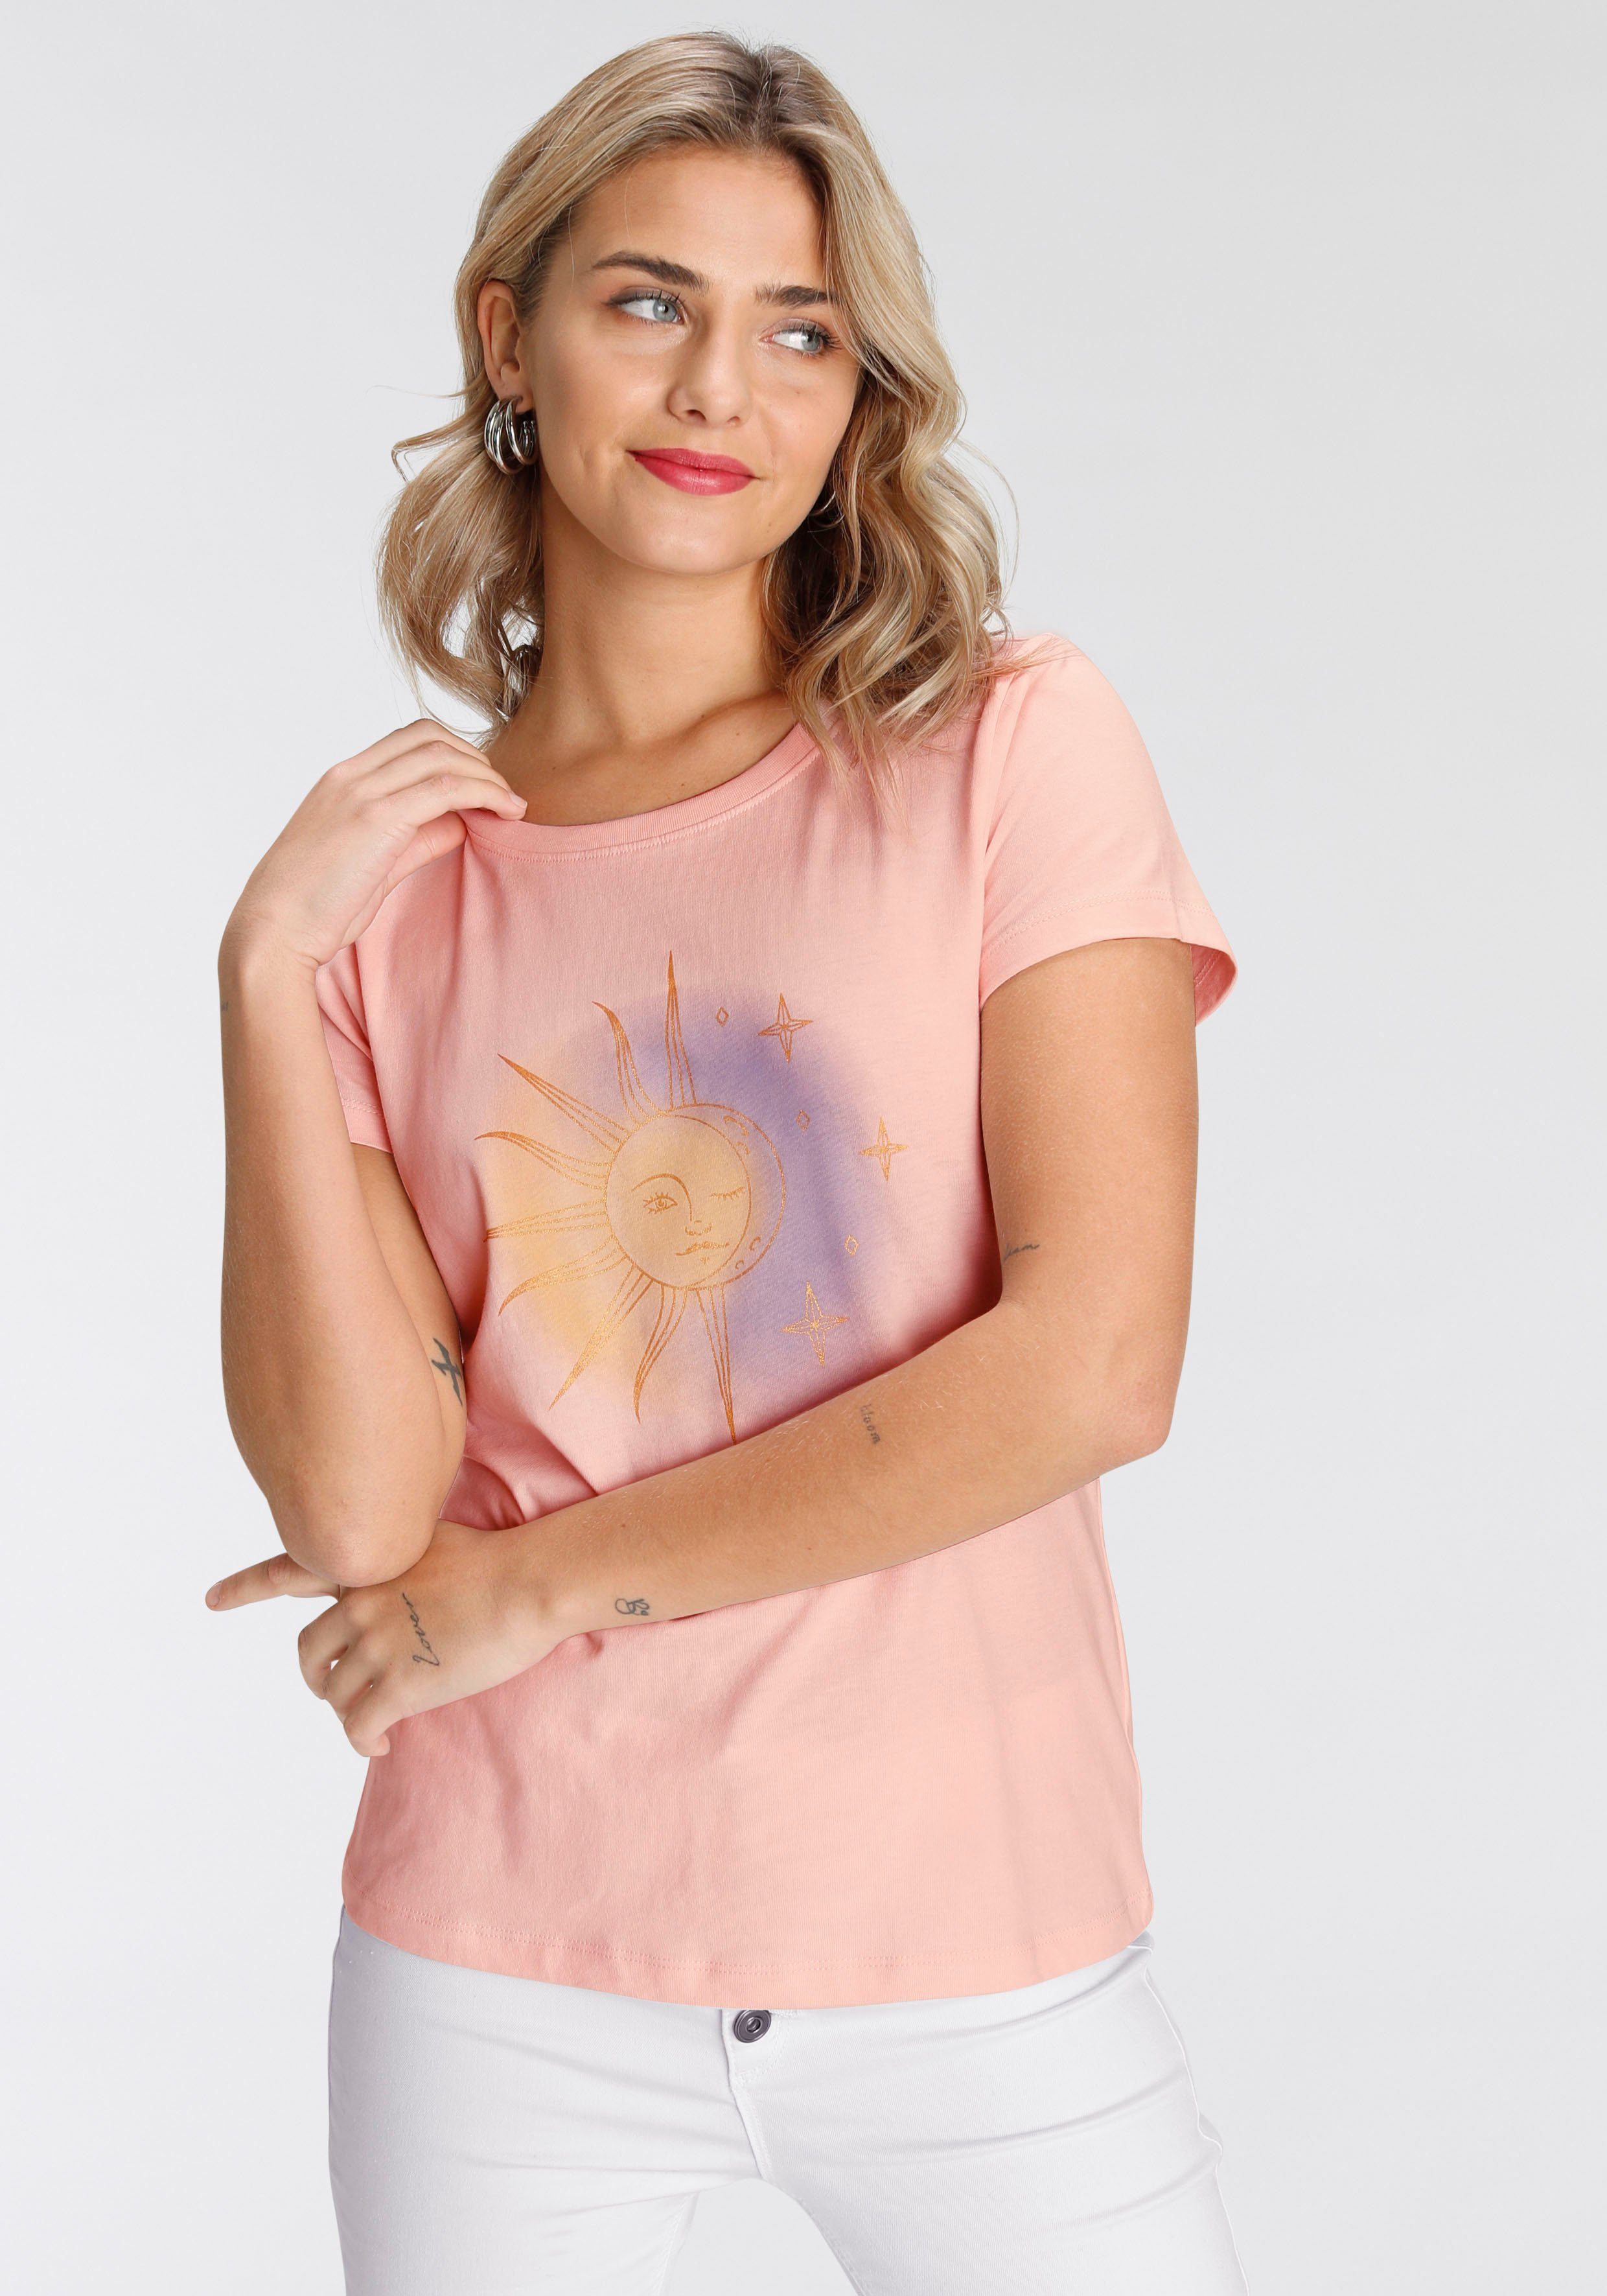 AJC Print-Shirt in verschiedenen modischen rosa Designs